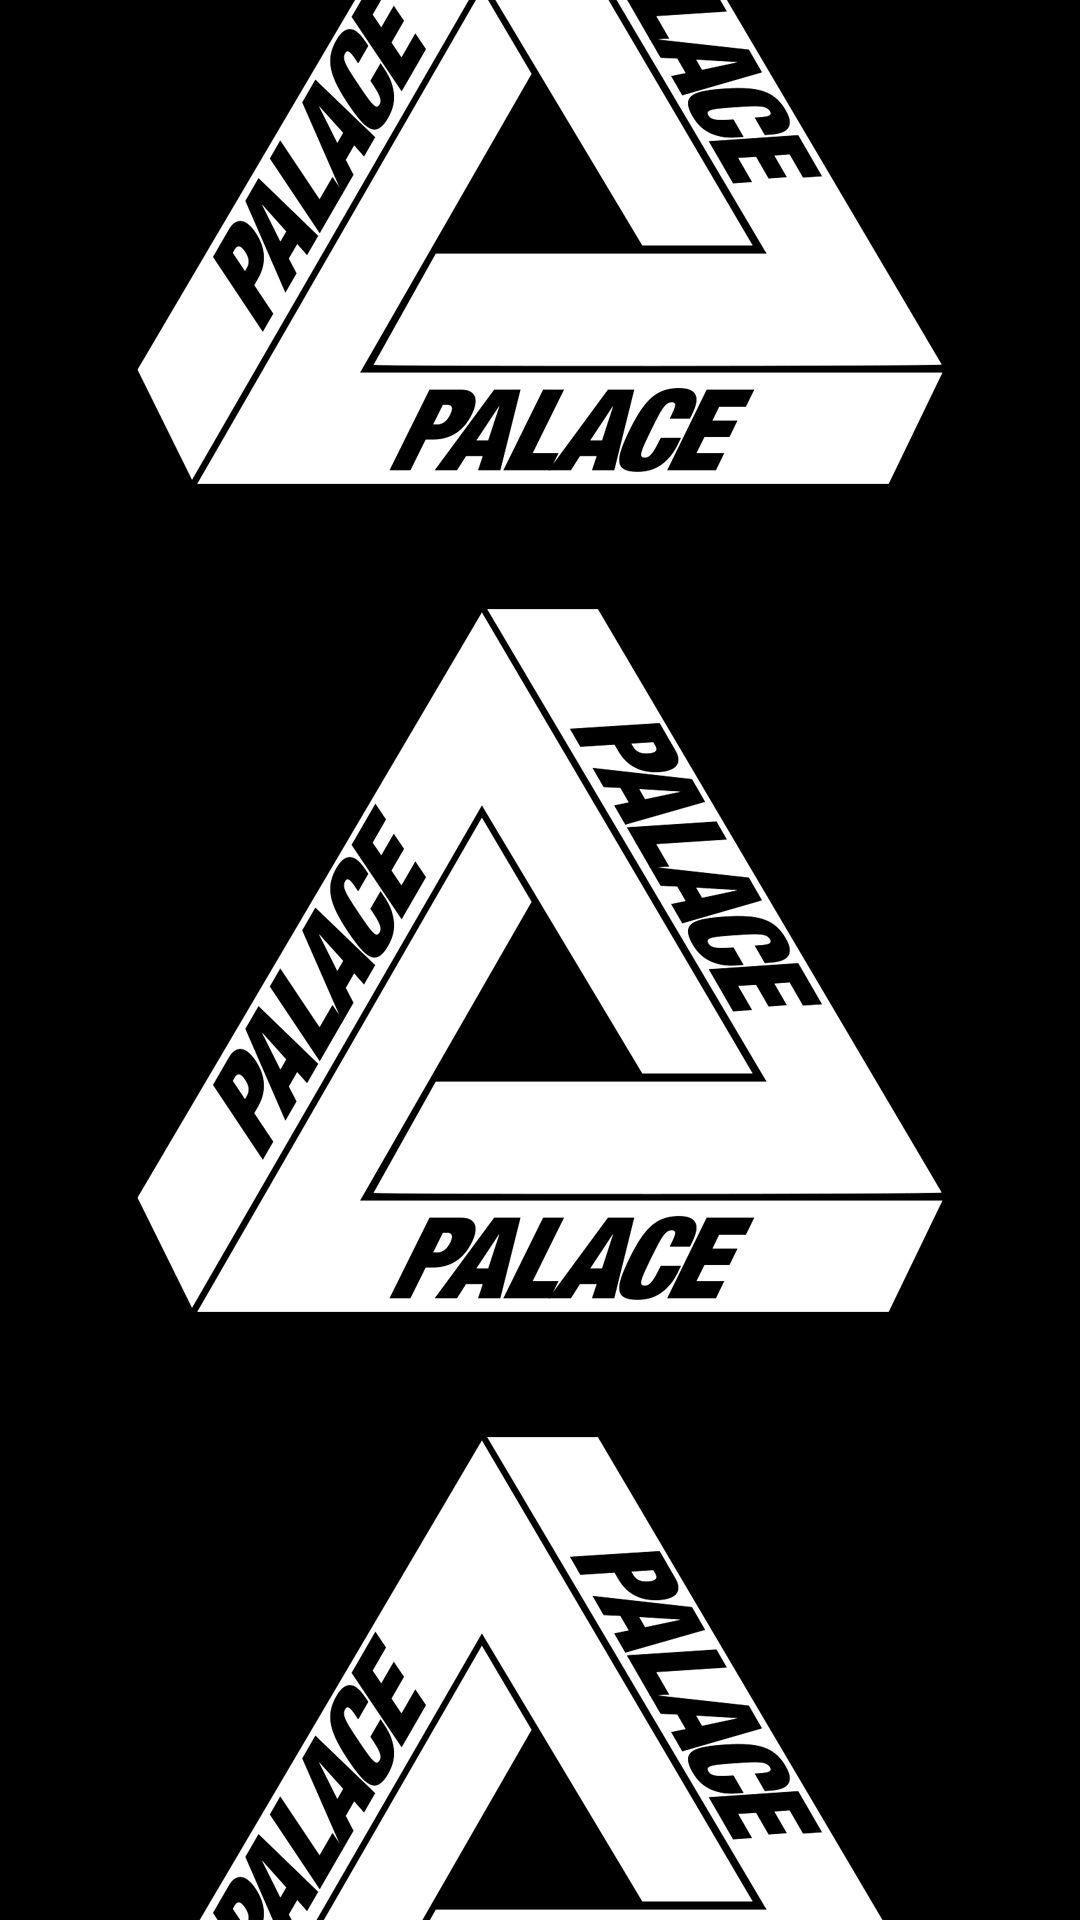 Palace Brand Logo - Palace Skateboards [M] – MEKKA GALLERY